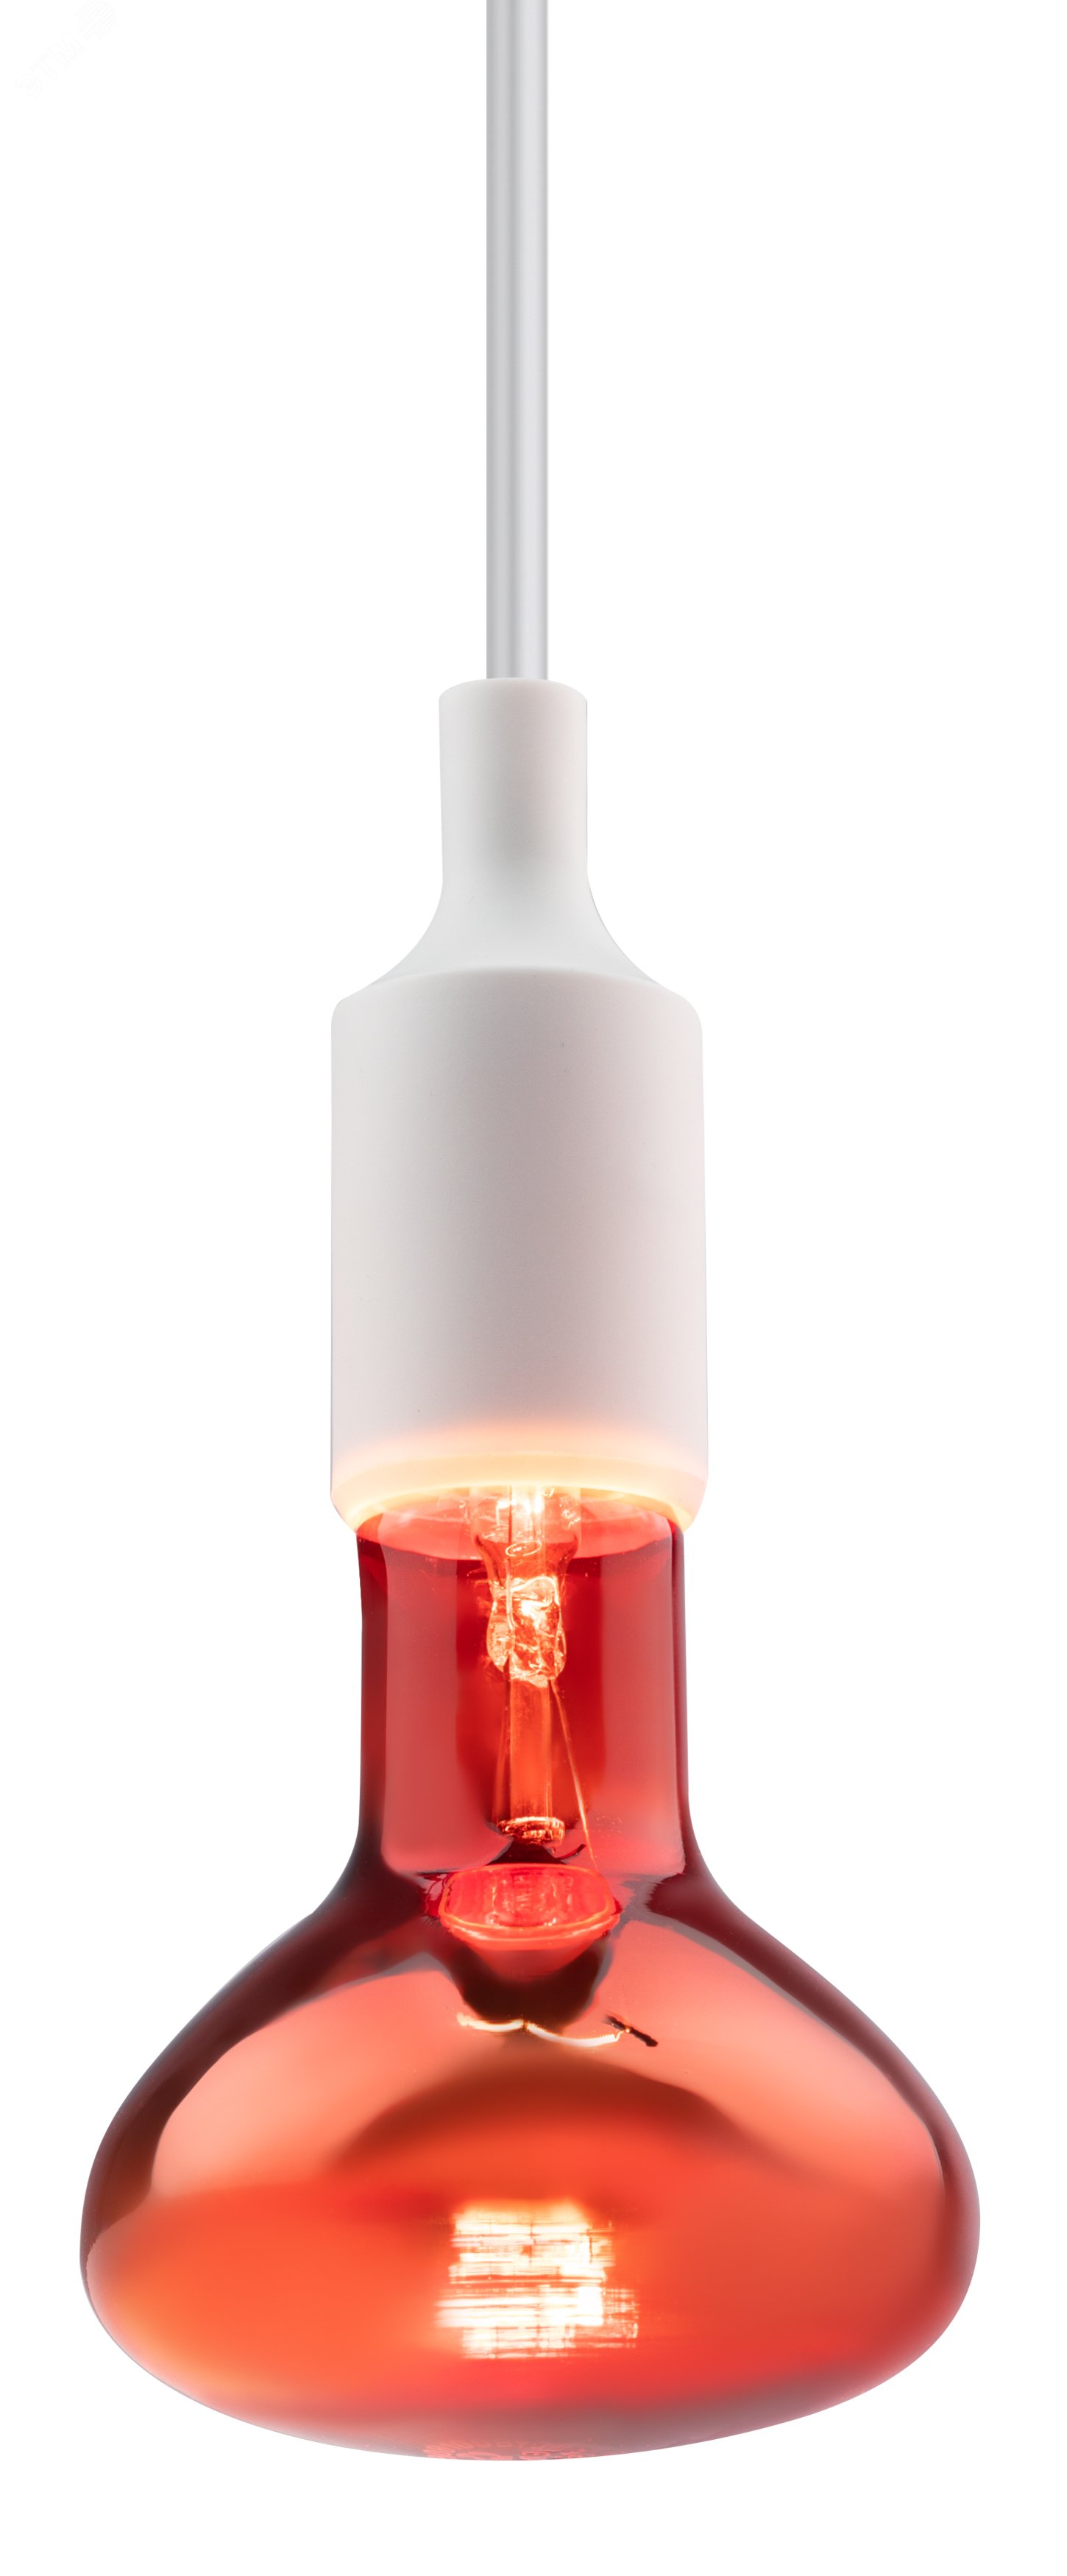 Инфракрасная лампа E27 для обогрева животных и освещения 100 Вт ИКЗК 230-100 R95 E27 Б0062000 ЭРА - превью 3